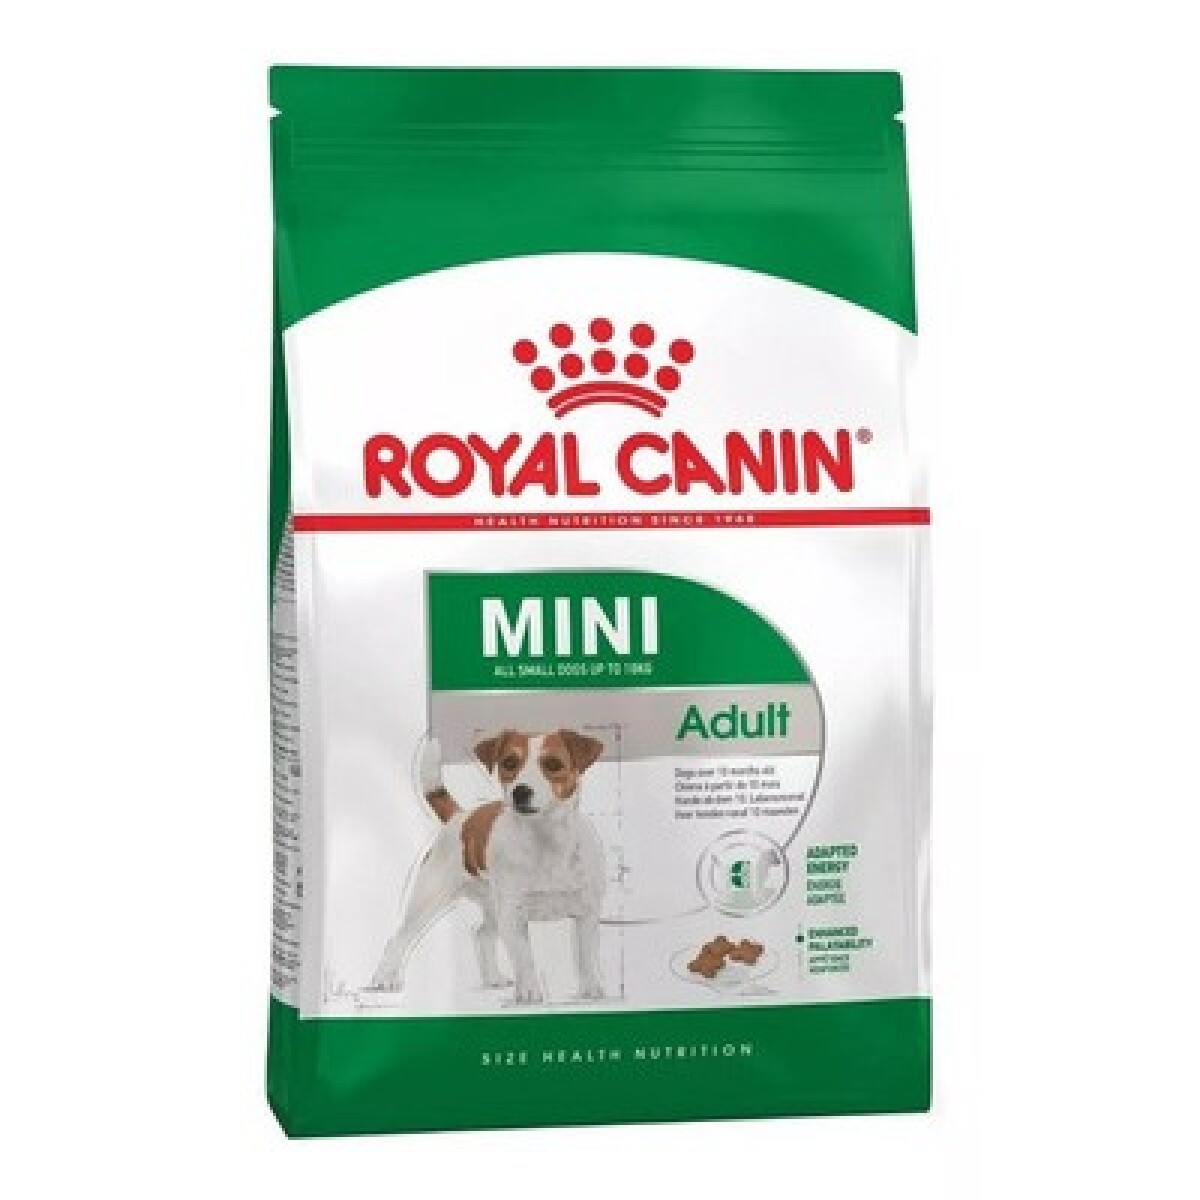 ROYAL CANIN MINI ADULT 1 KG - Unica 